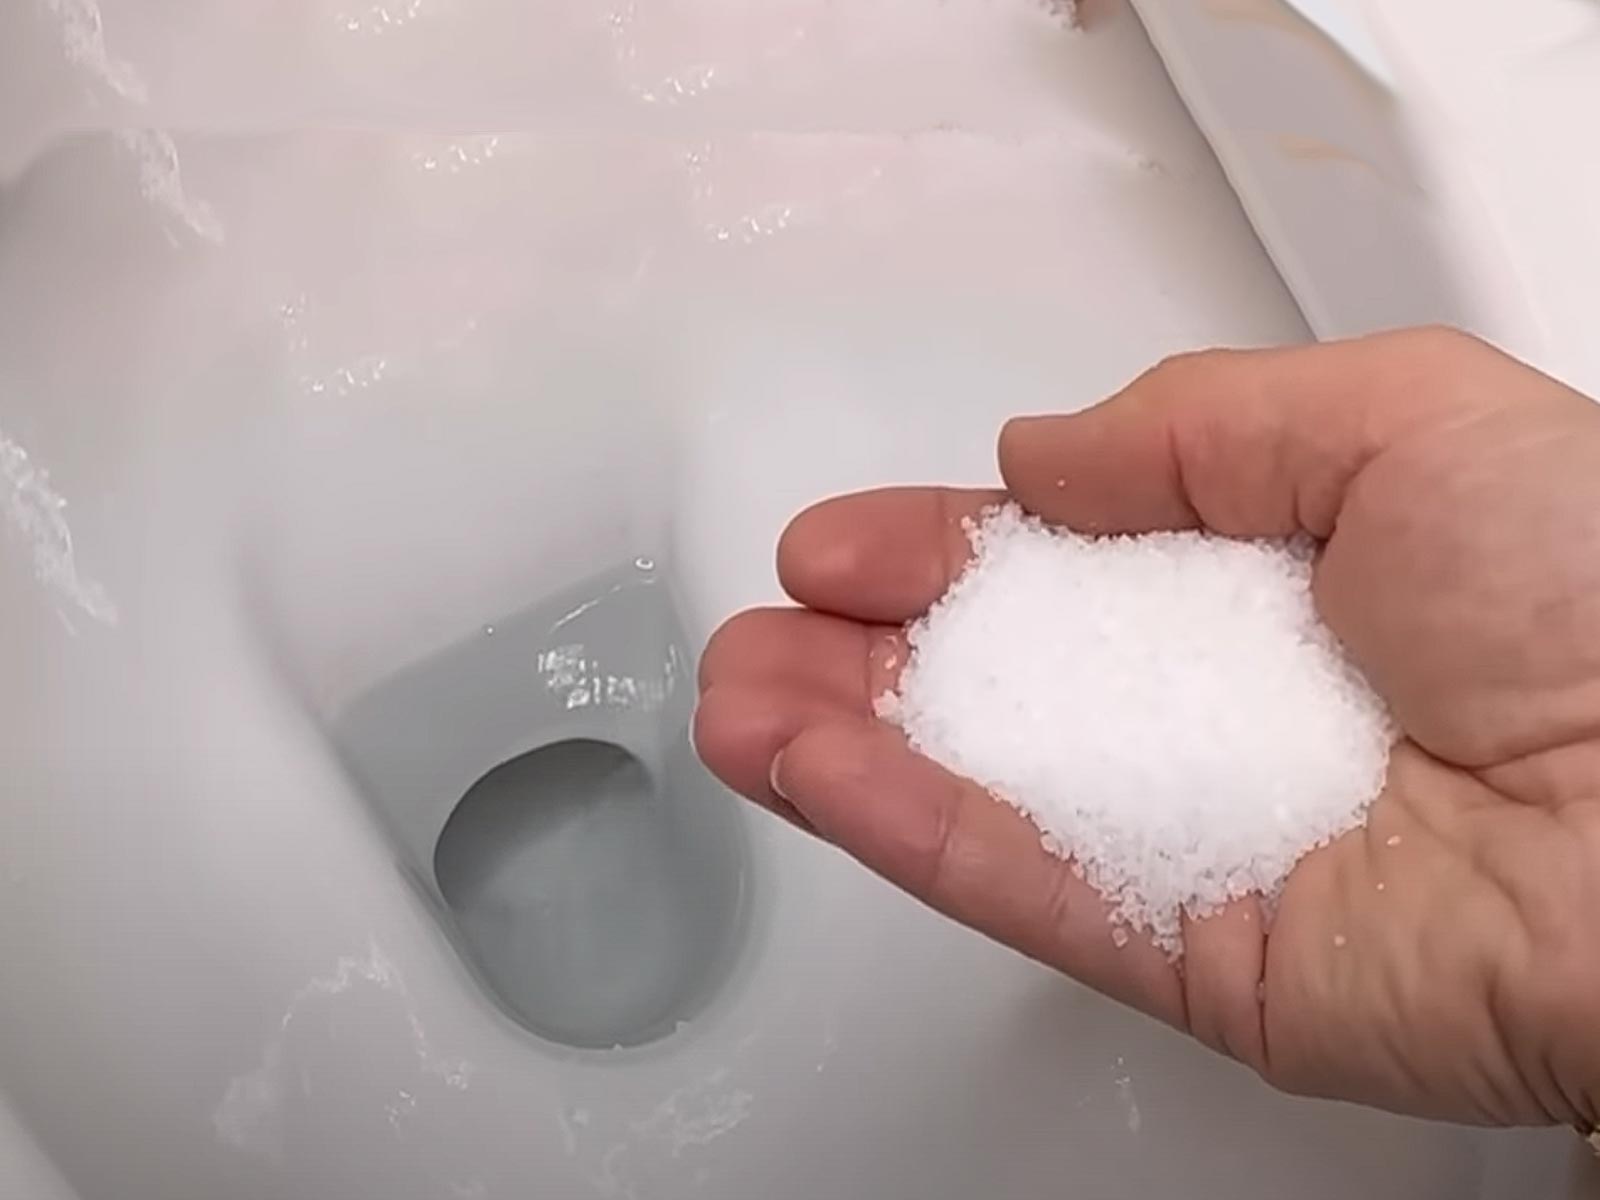 Χλωρίνη και Αλάτι: Φτιάξε το Ισχυρό καθαριστικό για να καθαρίσεις την λεκάνη της τουαλέτας από άλατα και πουρί